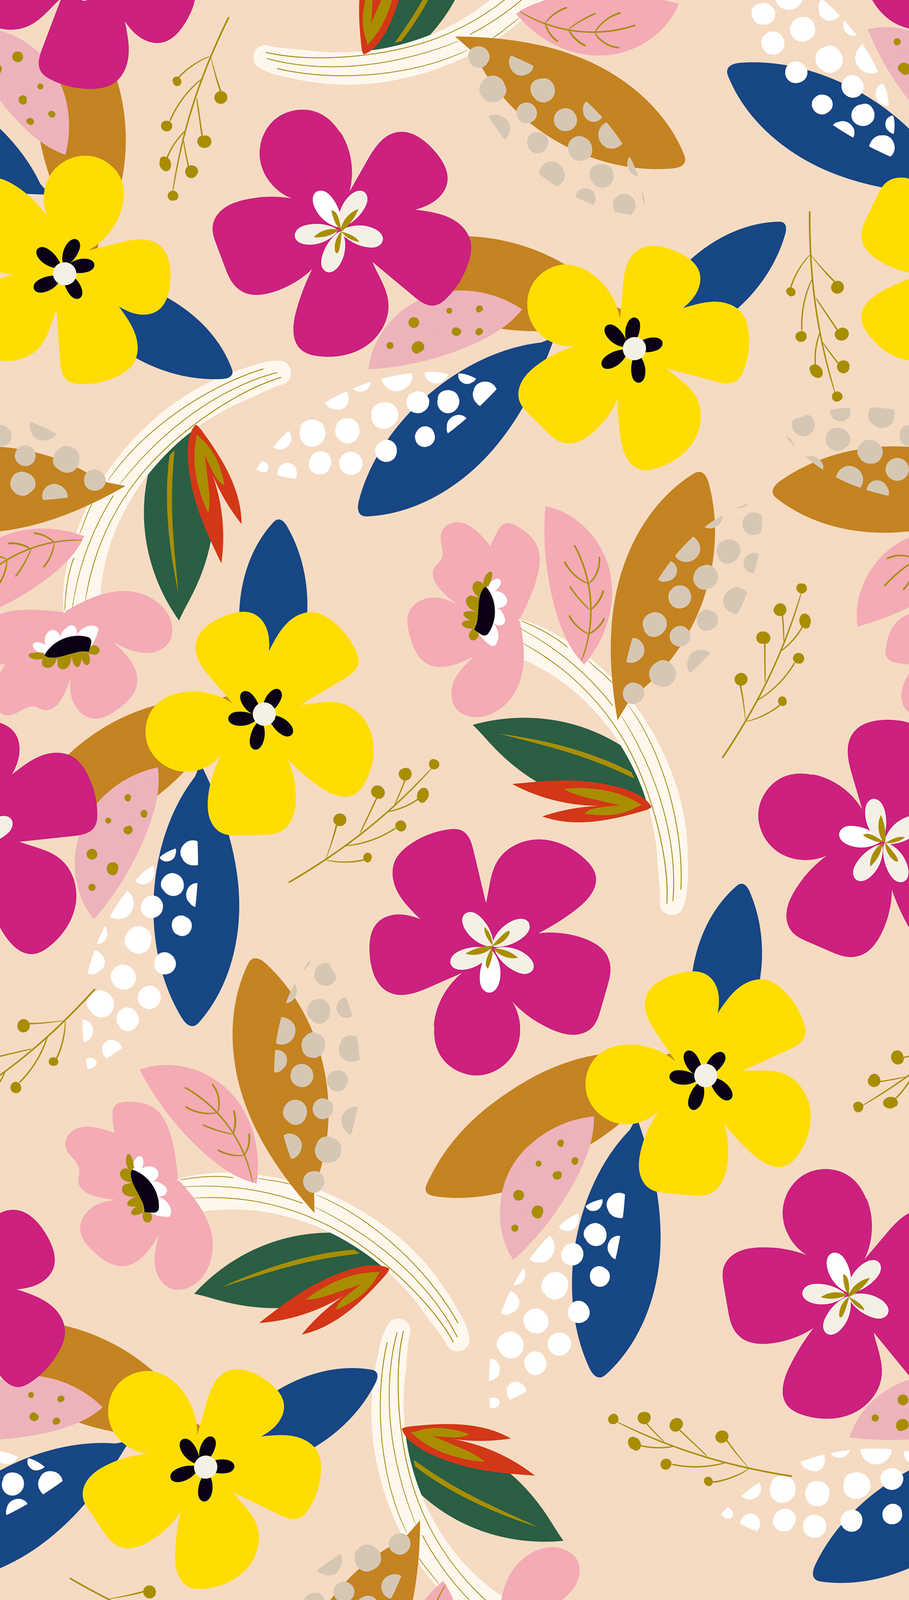             Papier peint aux motifs floraux multicolores dans des couleurs vives - multicolore, beige, jaune
        